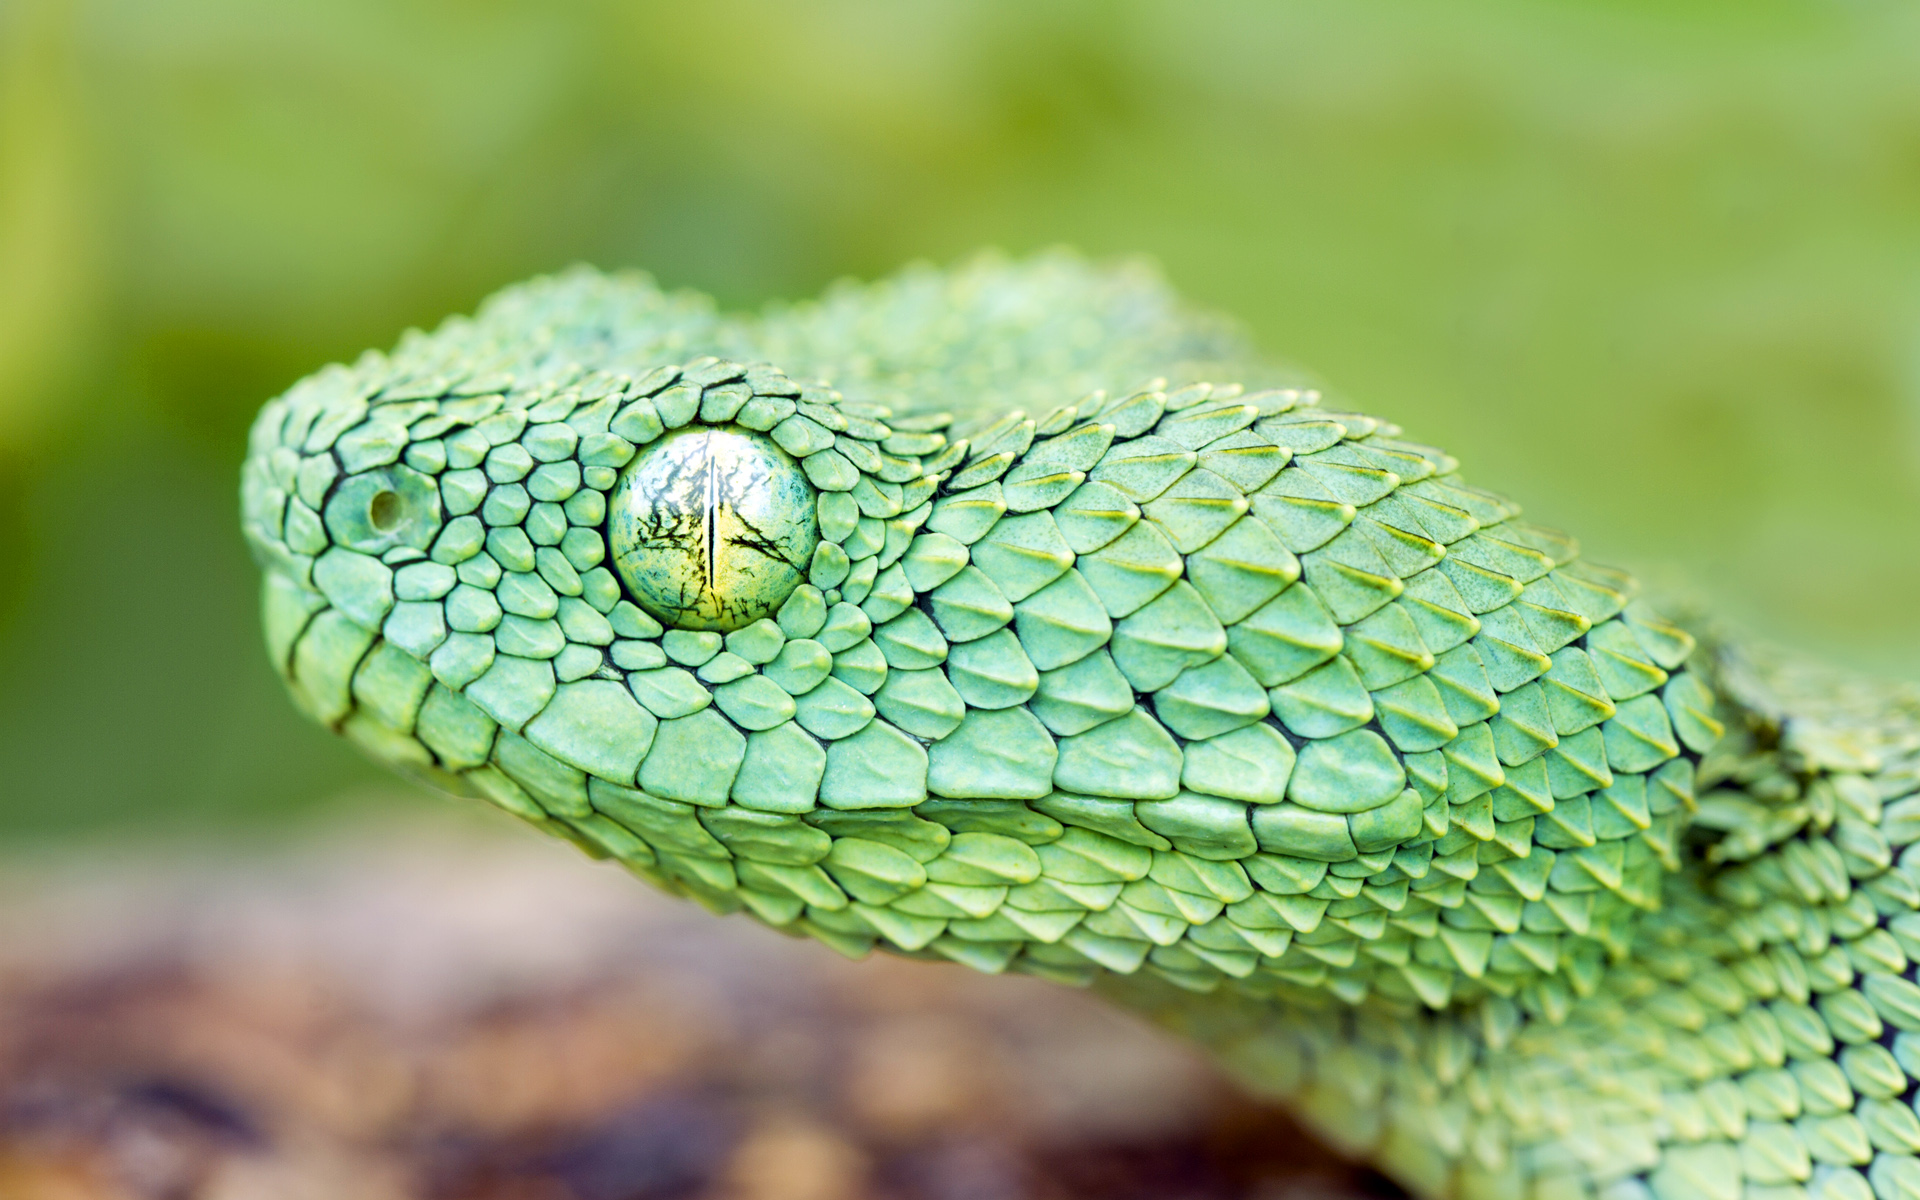 Descarga gratuita de fondo de pantalla para móvil de Serpiente, Reptiles, Animales.